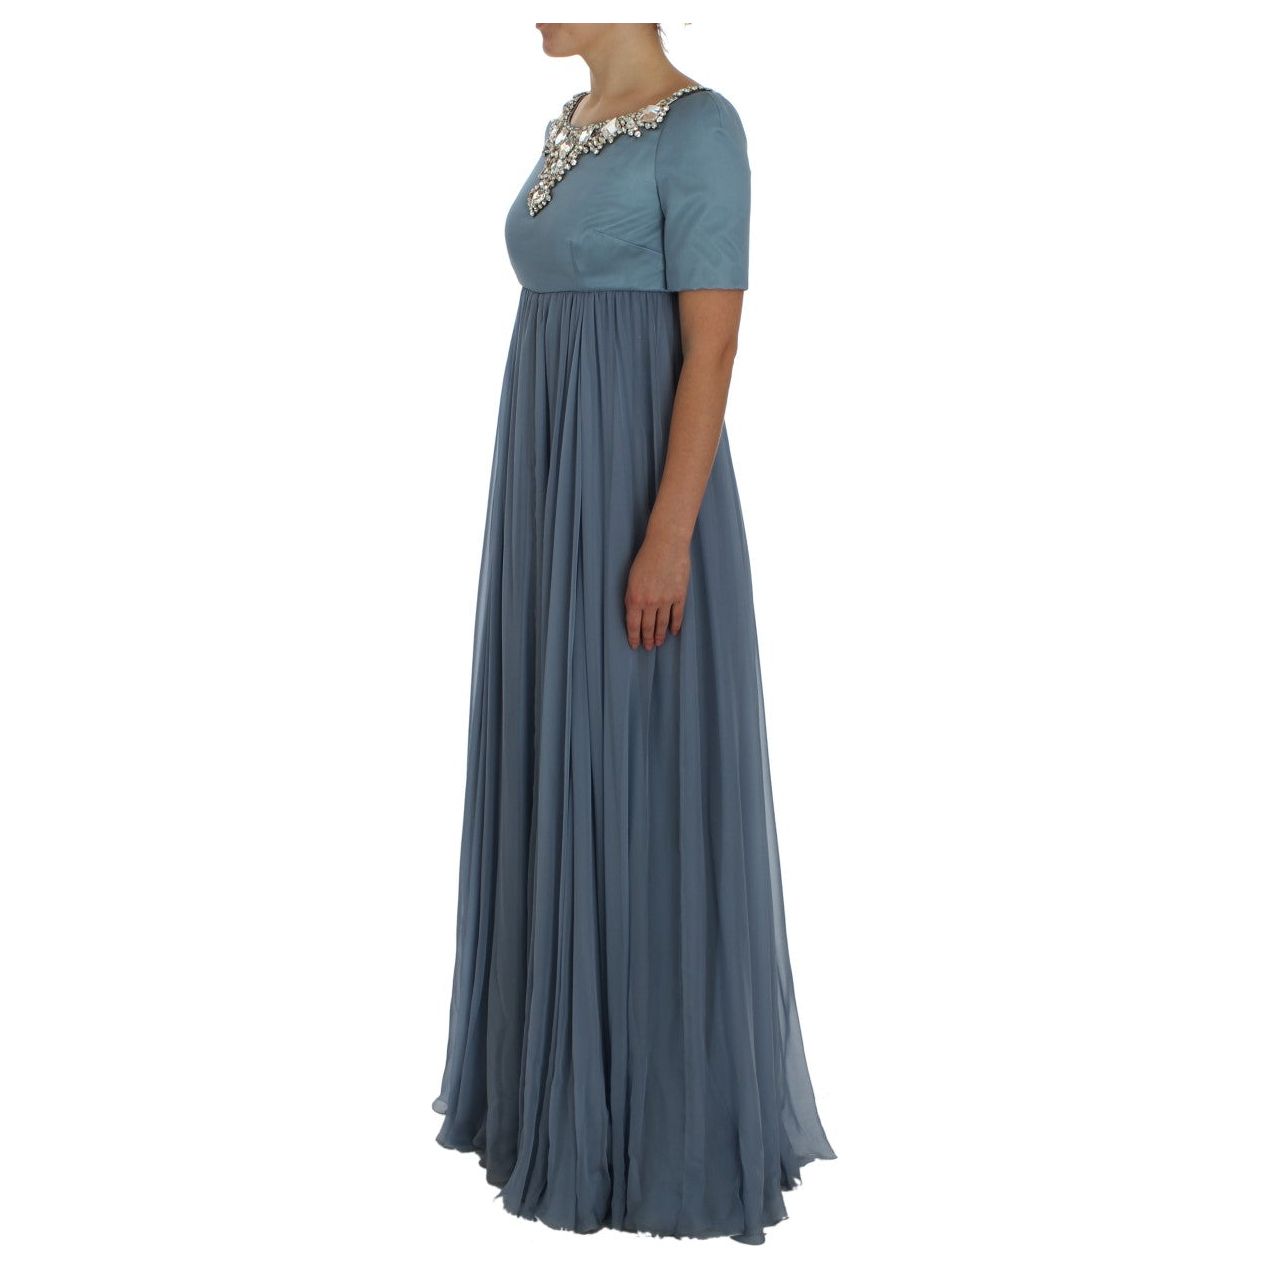 Dolce & Gabbana Elegant Crystal-Embellished Silk Gown blue-silk-crystal-sheath-gown-ball-dress 72691-blue-silk-crystal-sheath-gown-ball-dress-1.jpg